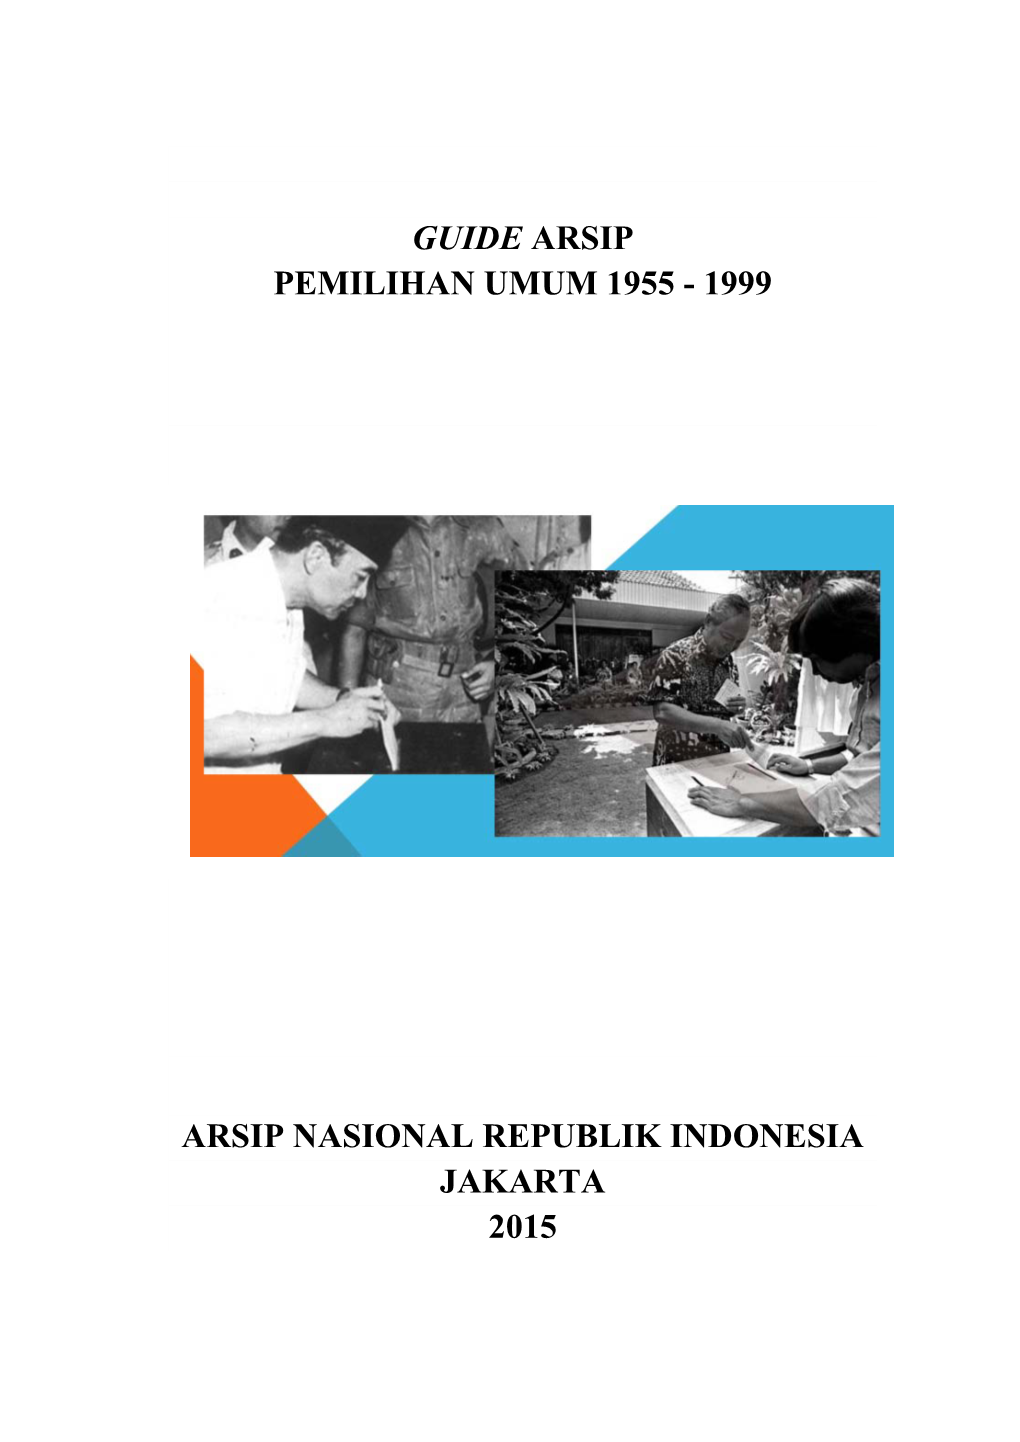 Guide Arsip Pemilihan Umum 1955 - 1999